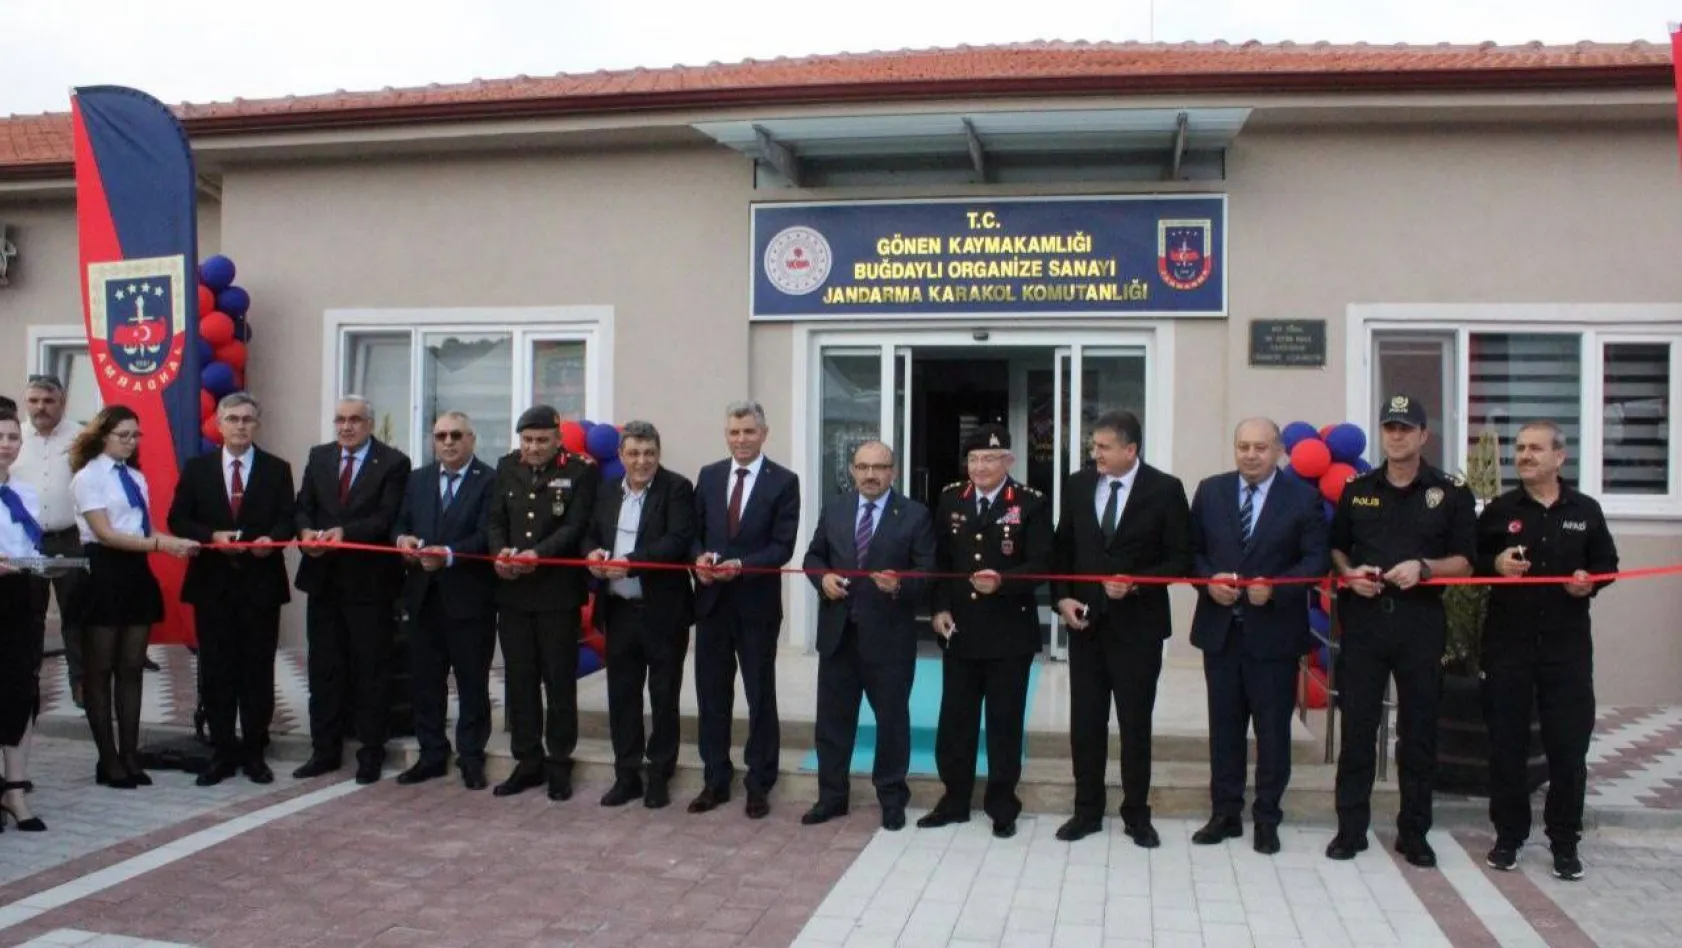 Gönen ve Erdek'te yeni Jandarma Karakol Komutanlığı binaları açıldı